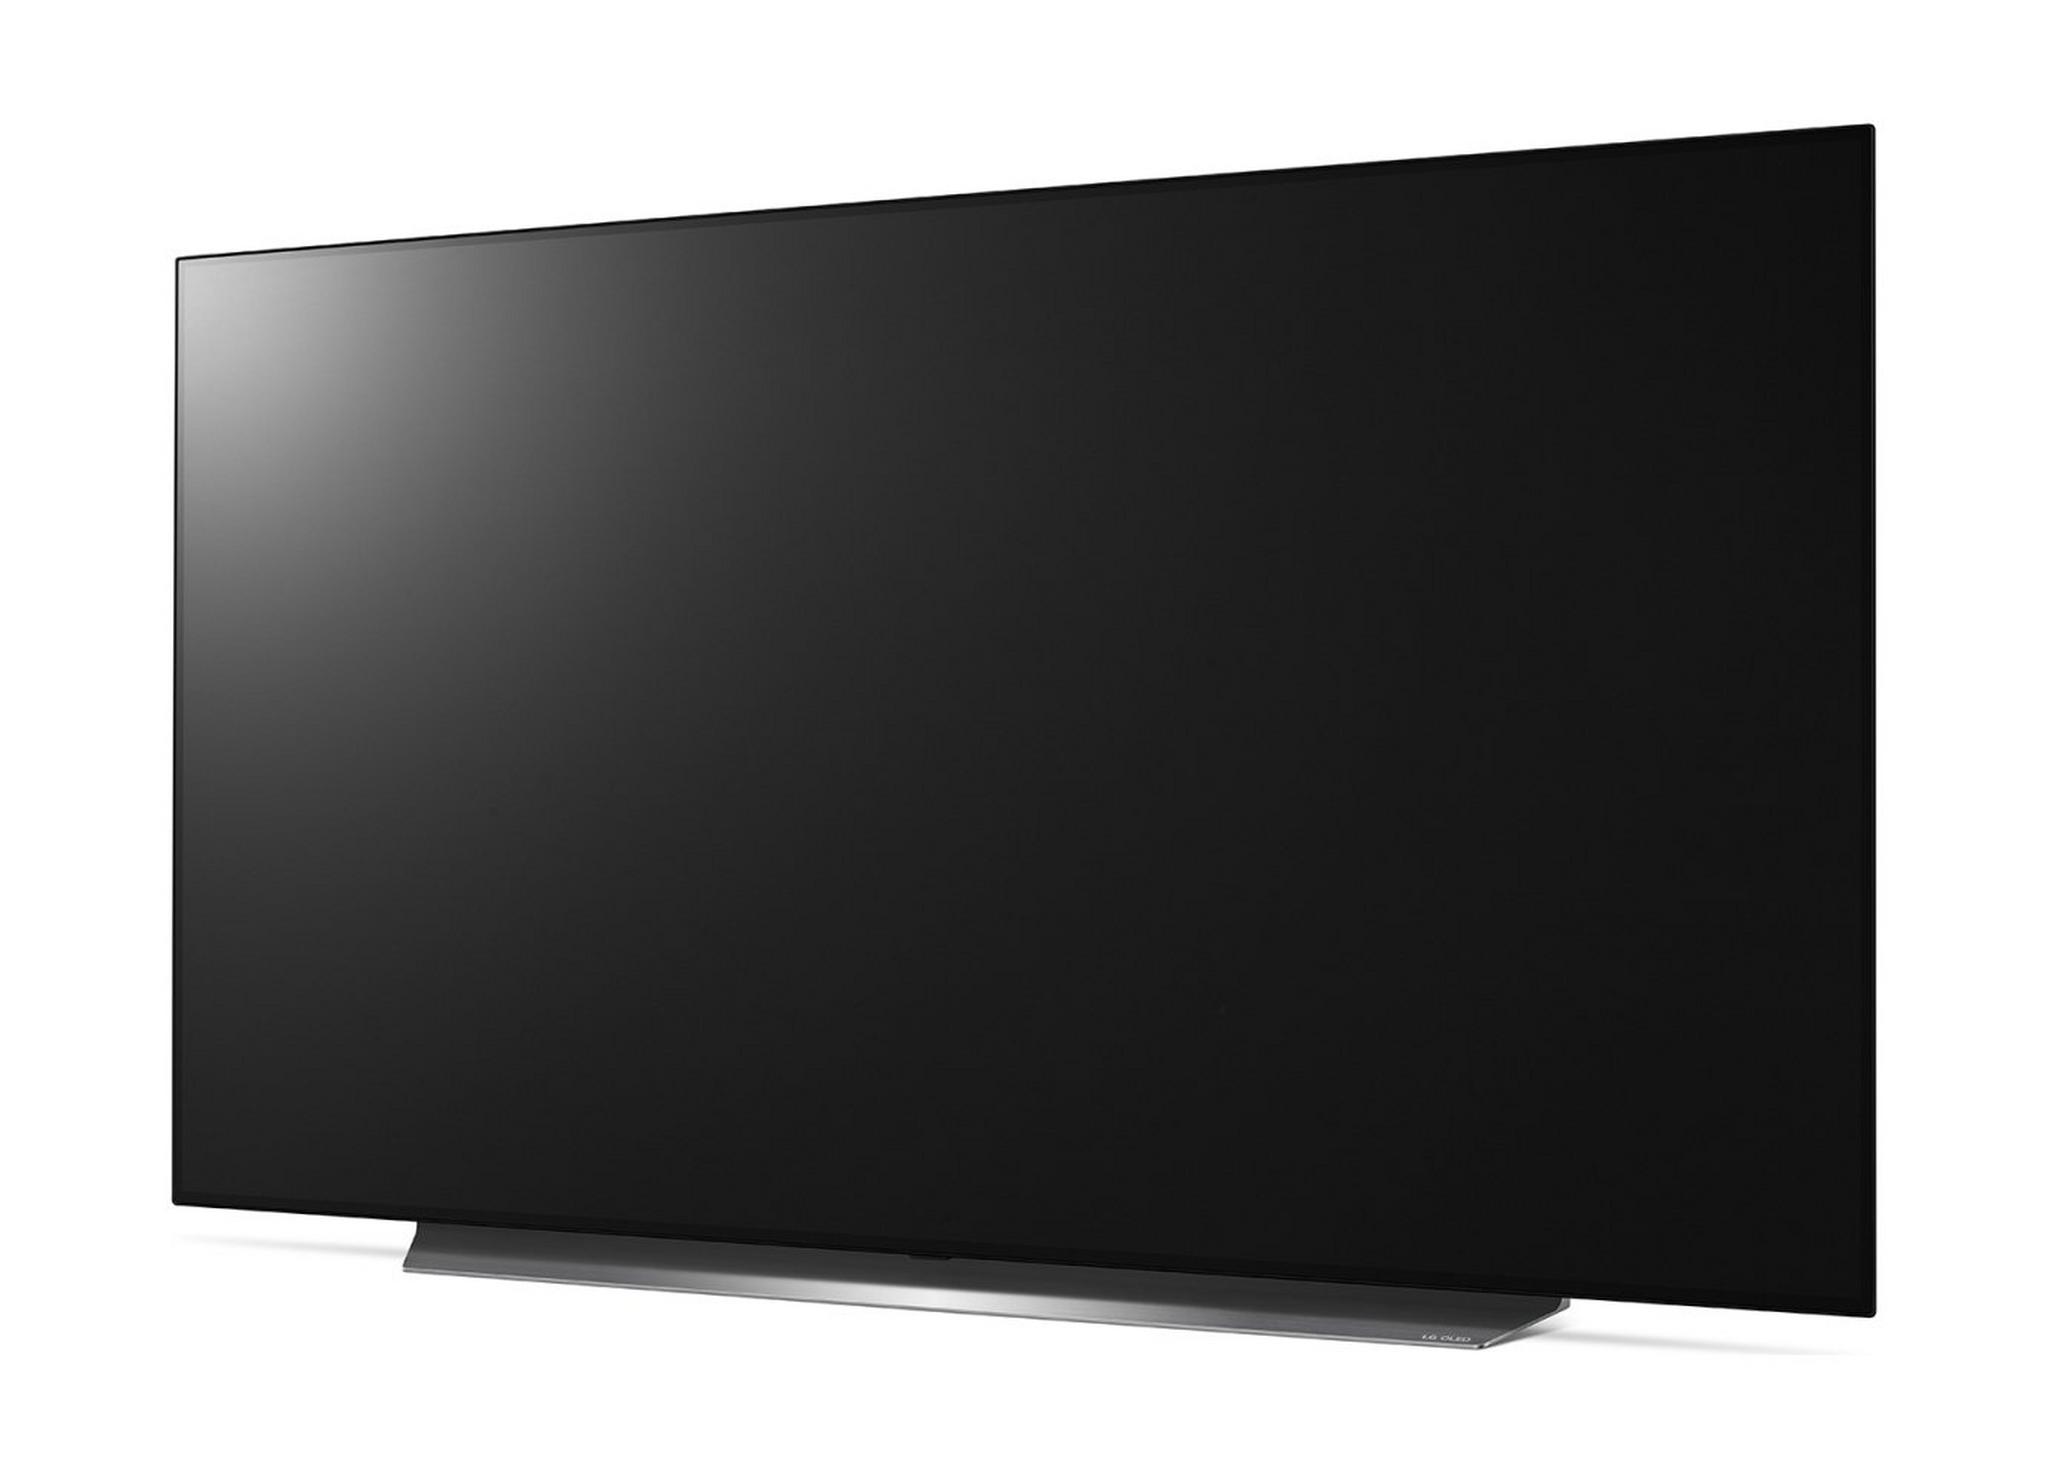 LG 65-inch 4K HDR Smart OLED TV - (65C9PVA)